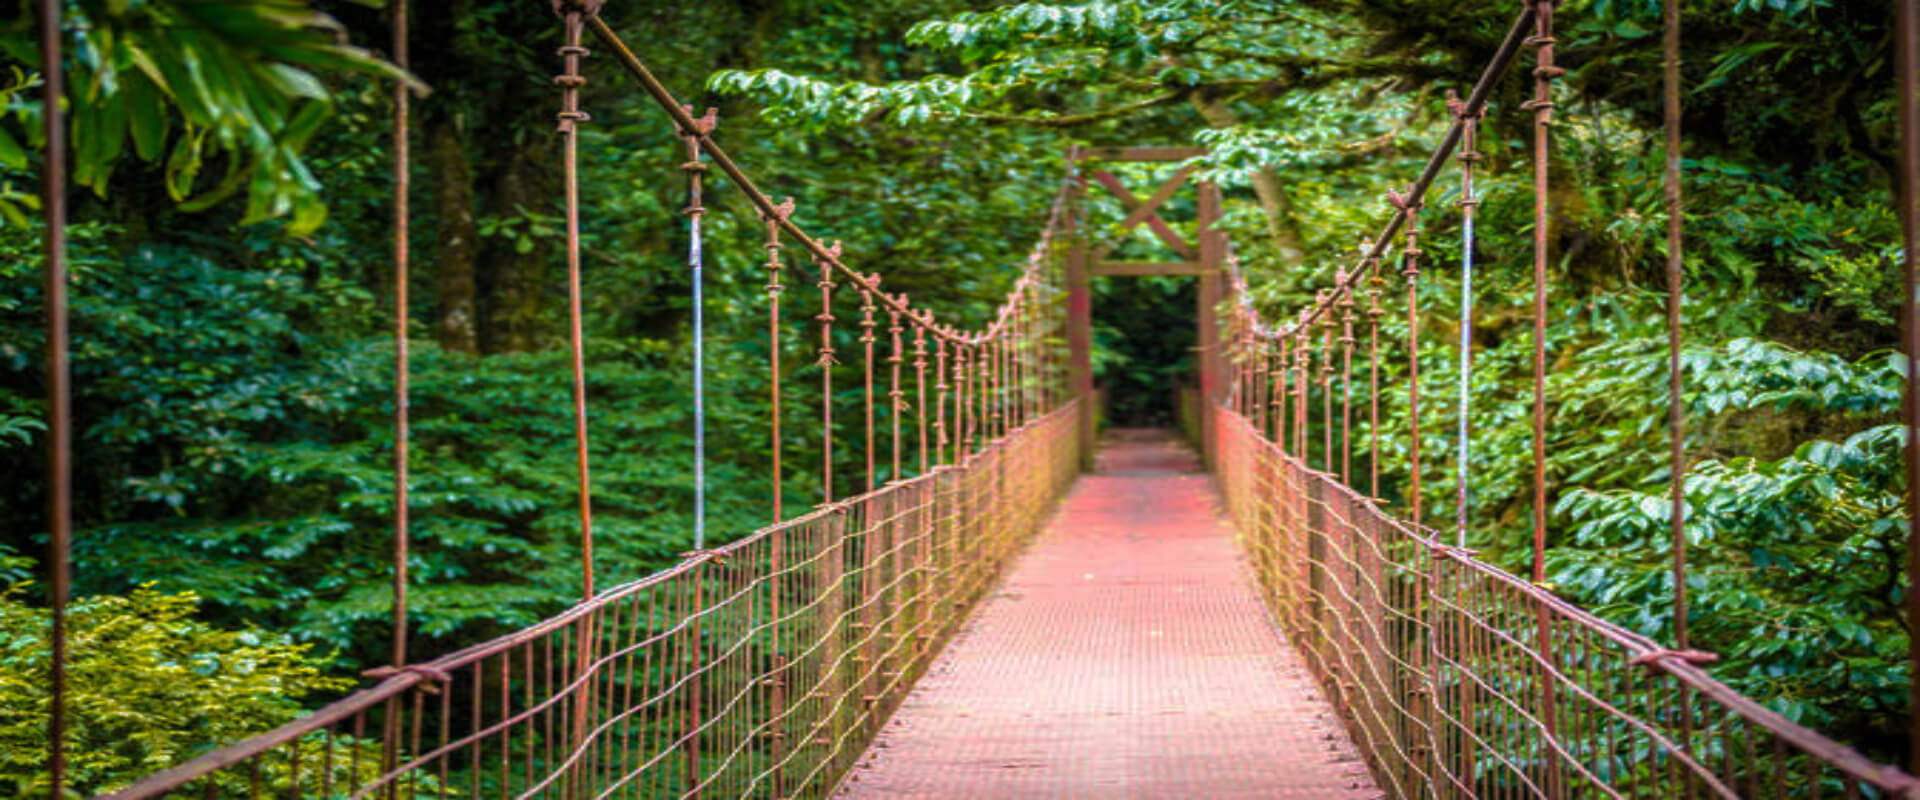 Caminata por los puentes colgantes del Parque Místico | Costa Rica Jade Tours